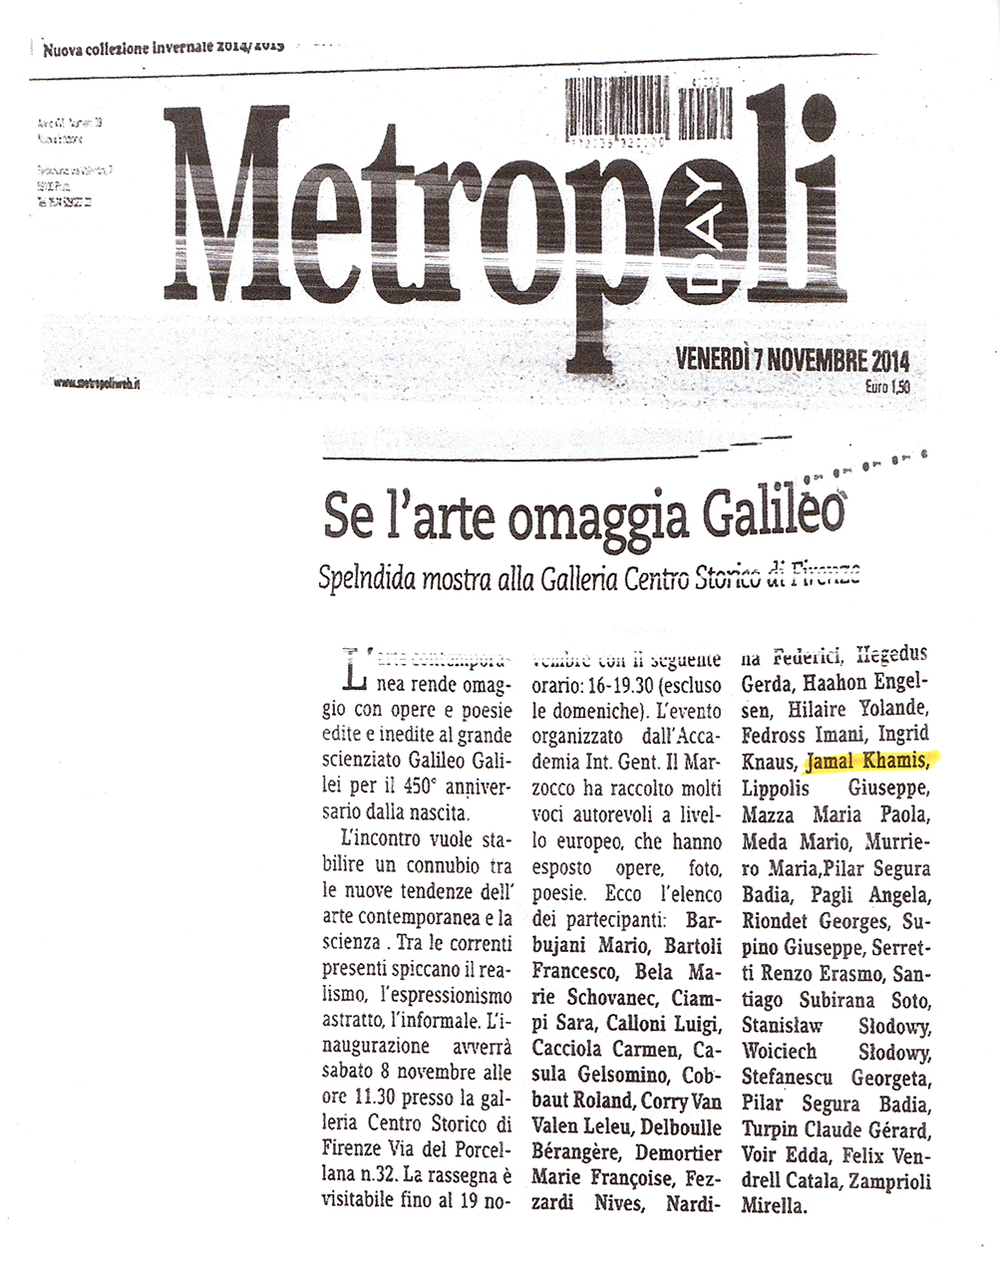 Metropoli - Se l'arte omaggia Galileo.jpg